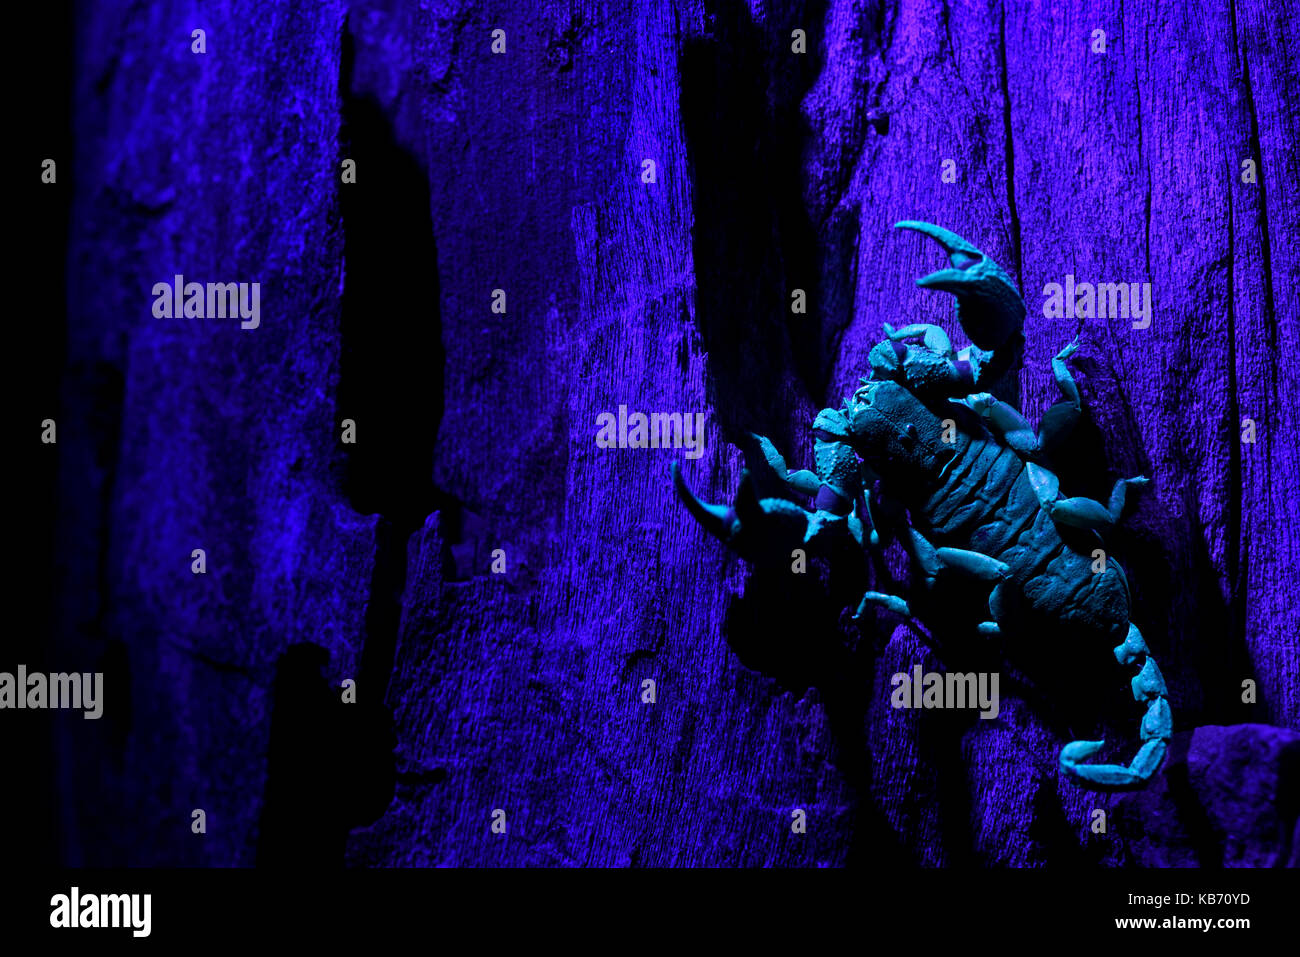 L'Afrique du Sud (scorpion opisthacanthus asper) illuminé par rayons ultraviolets, Afrique du Sud, du Limpopo, Kruger np Banque D'Images